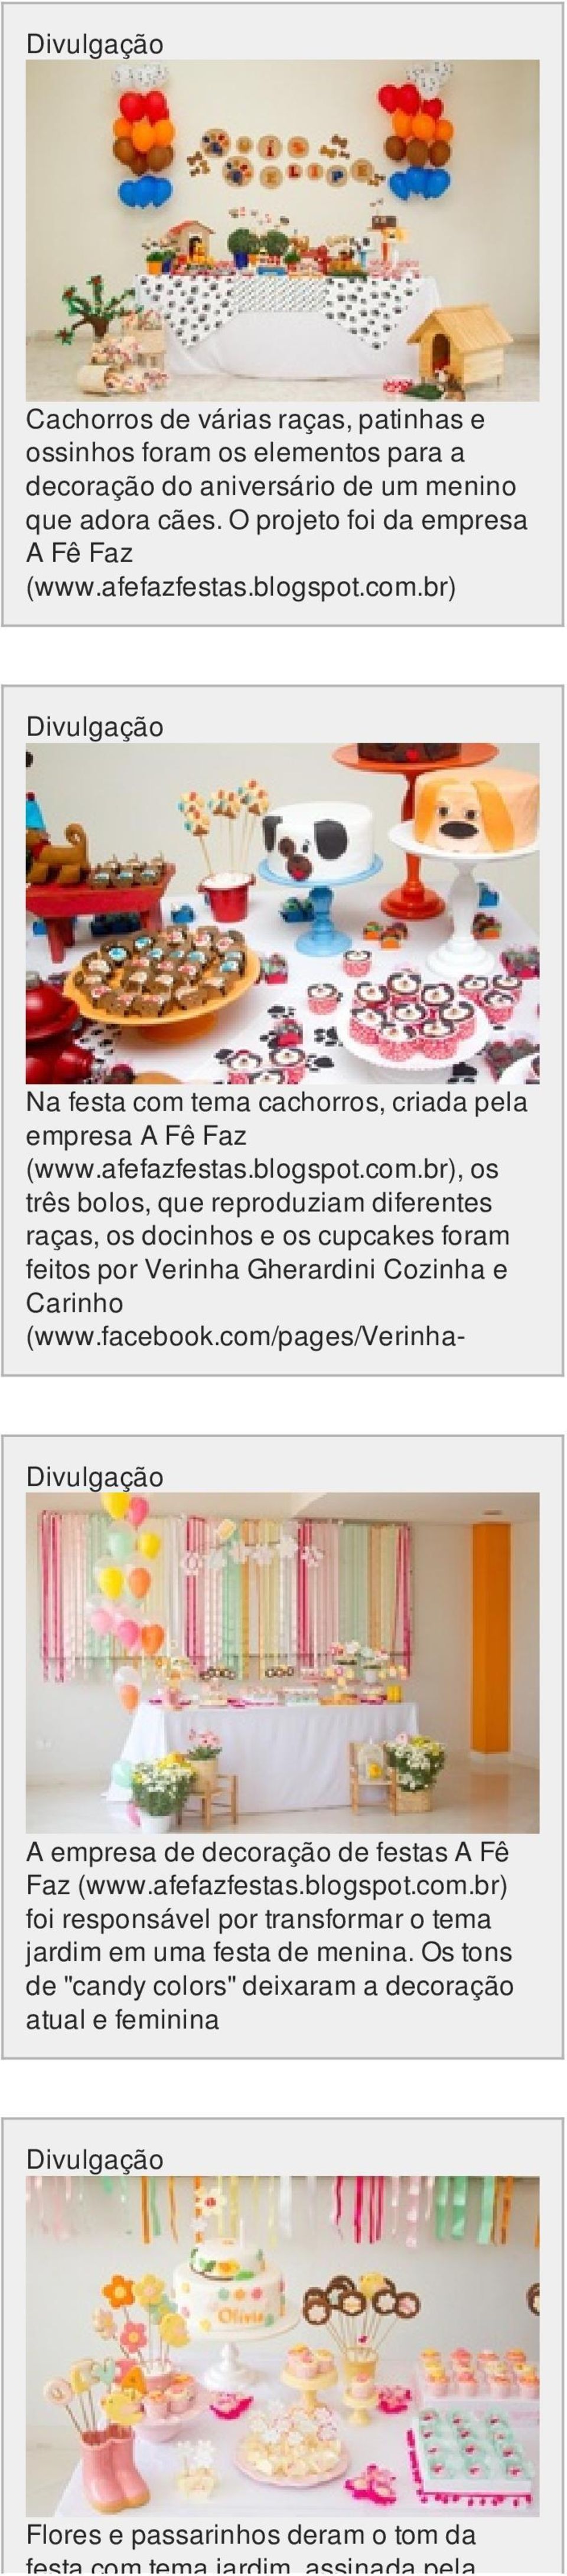 facebook.com/pages/verinha- A empresa de decoração de festas A Fê Faz (www.afefazfestas.blogspot.com.br) foi responsável por transformar o tema jardim em uma festa de menina.